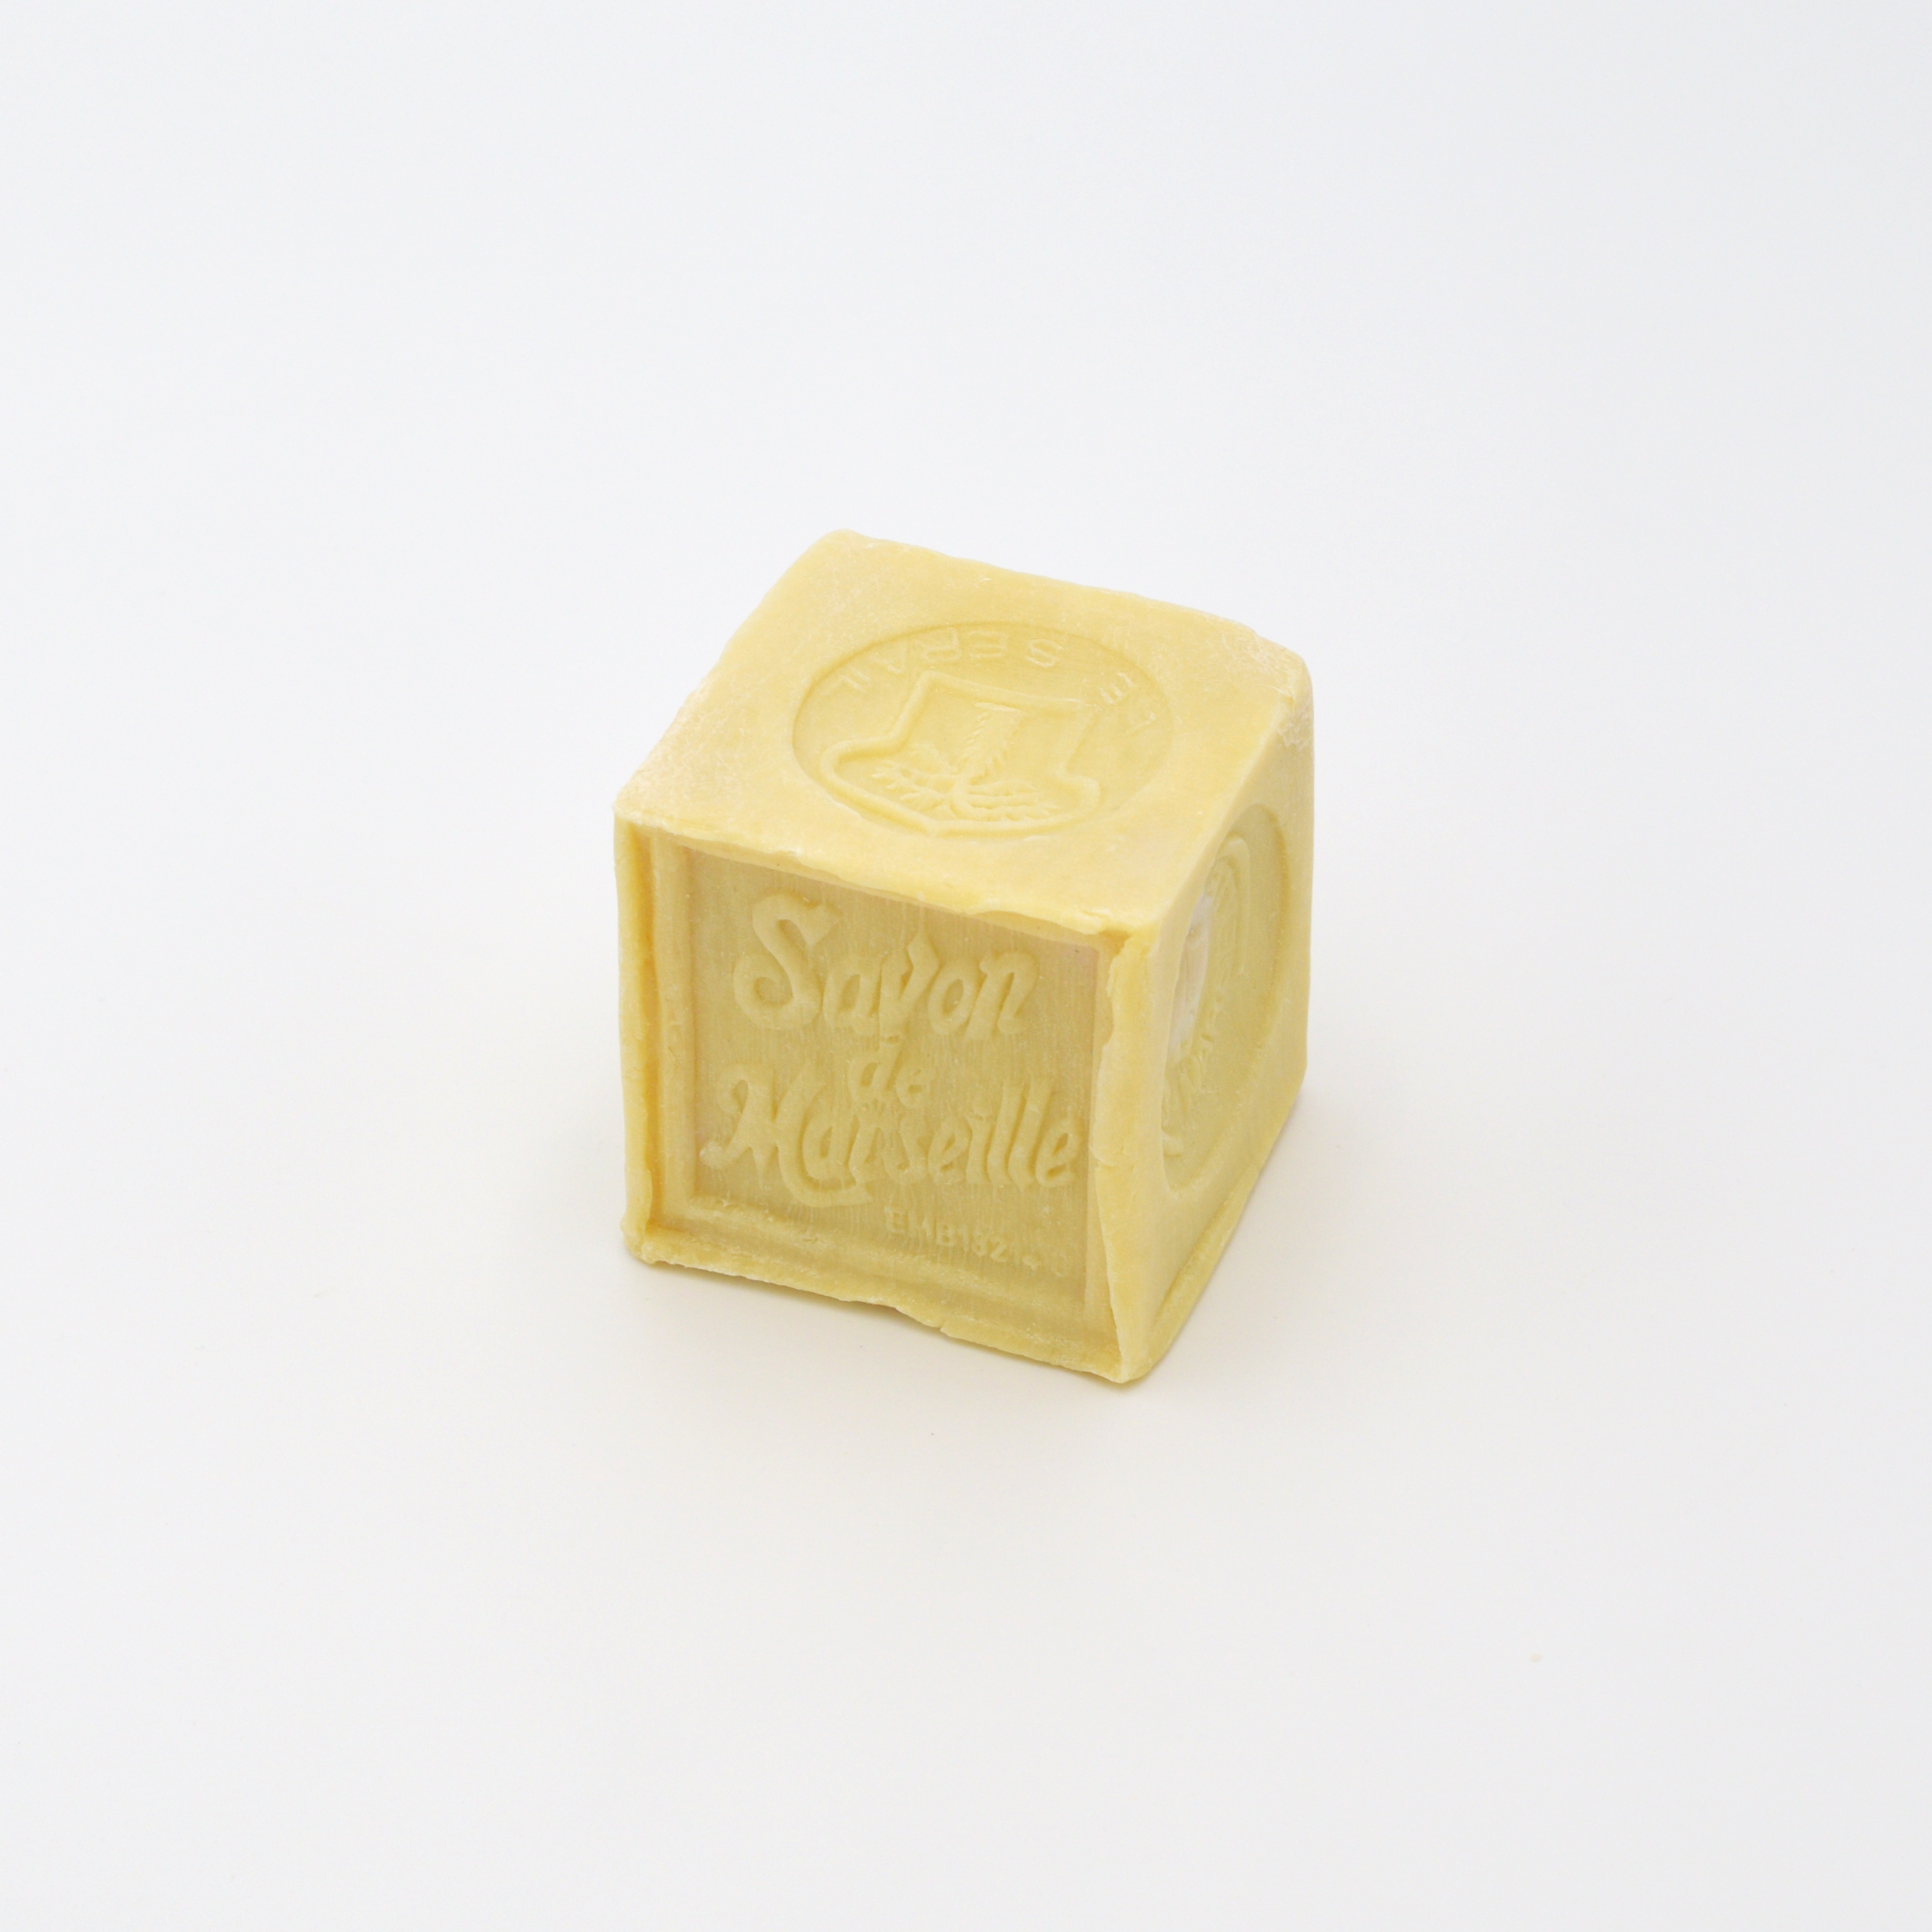 Savon de Marseille Soap, 300g Cube